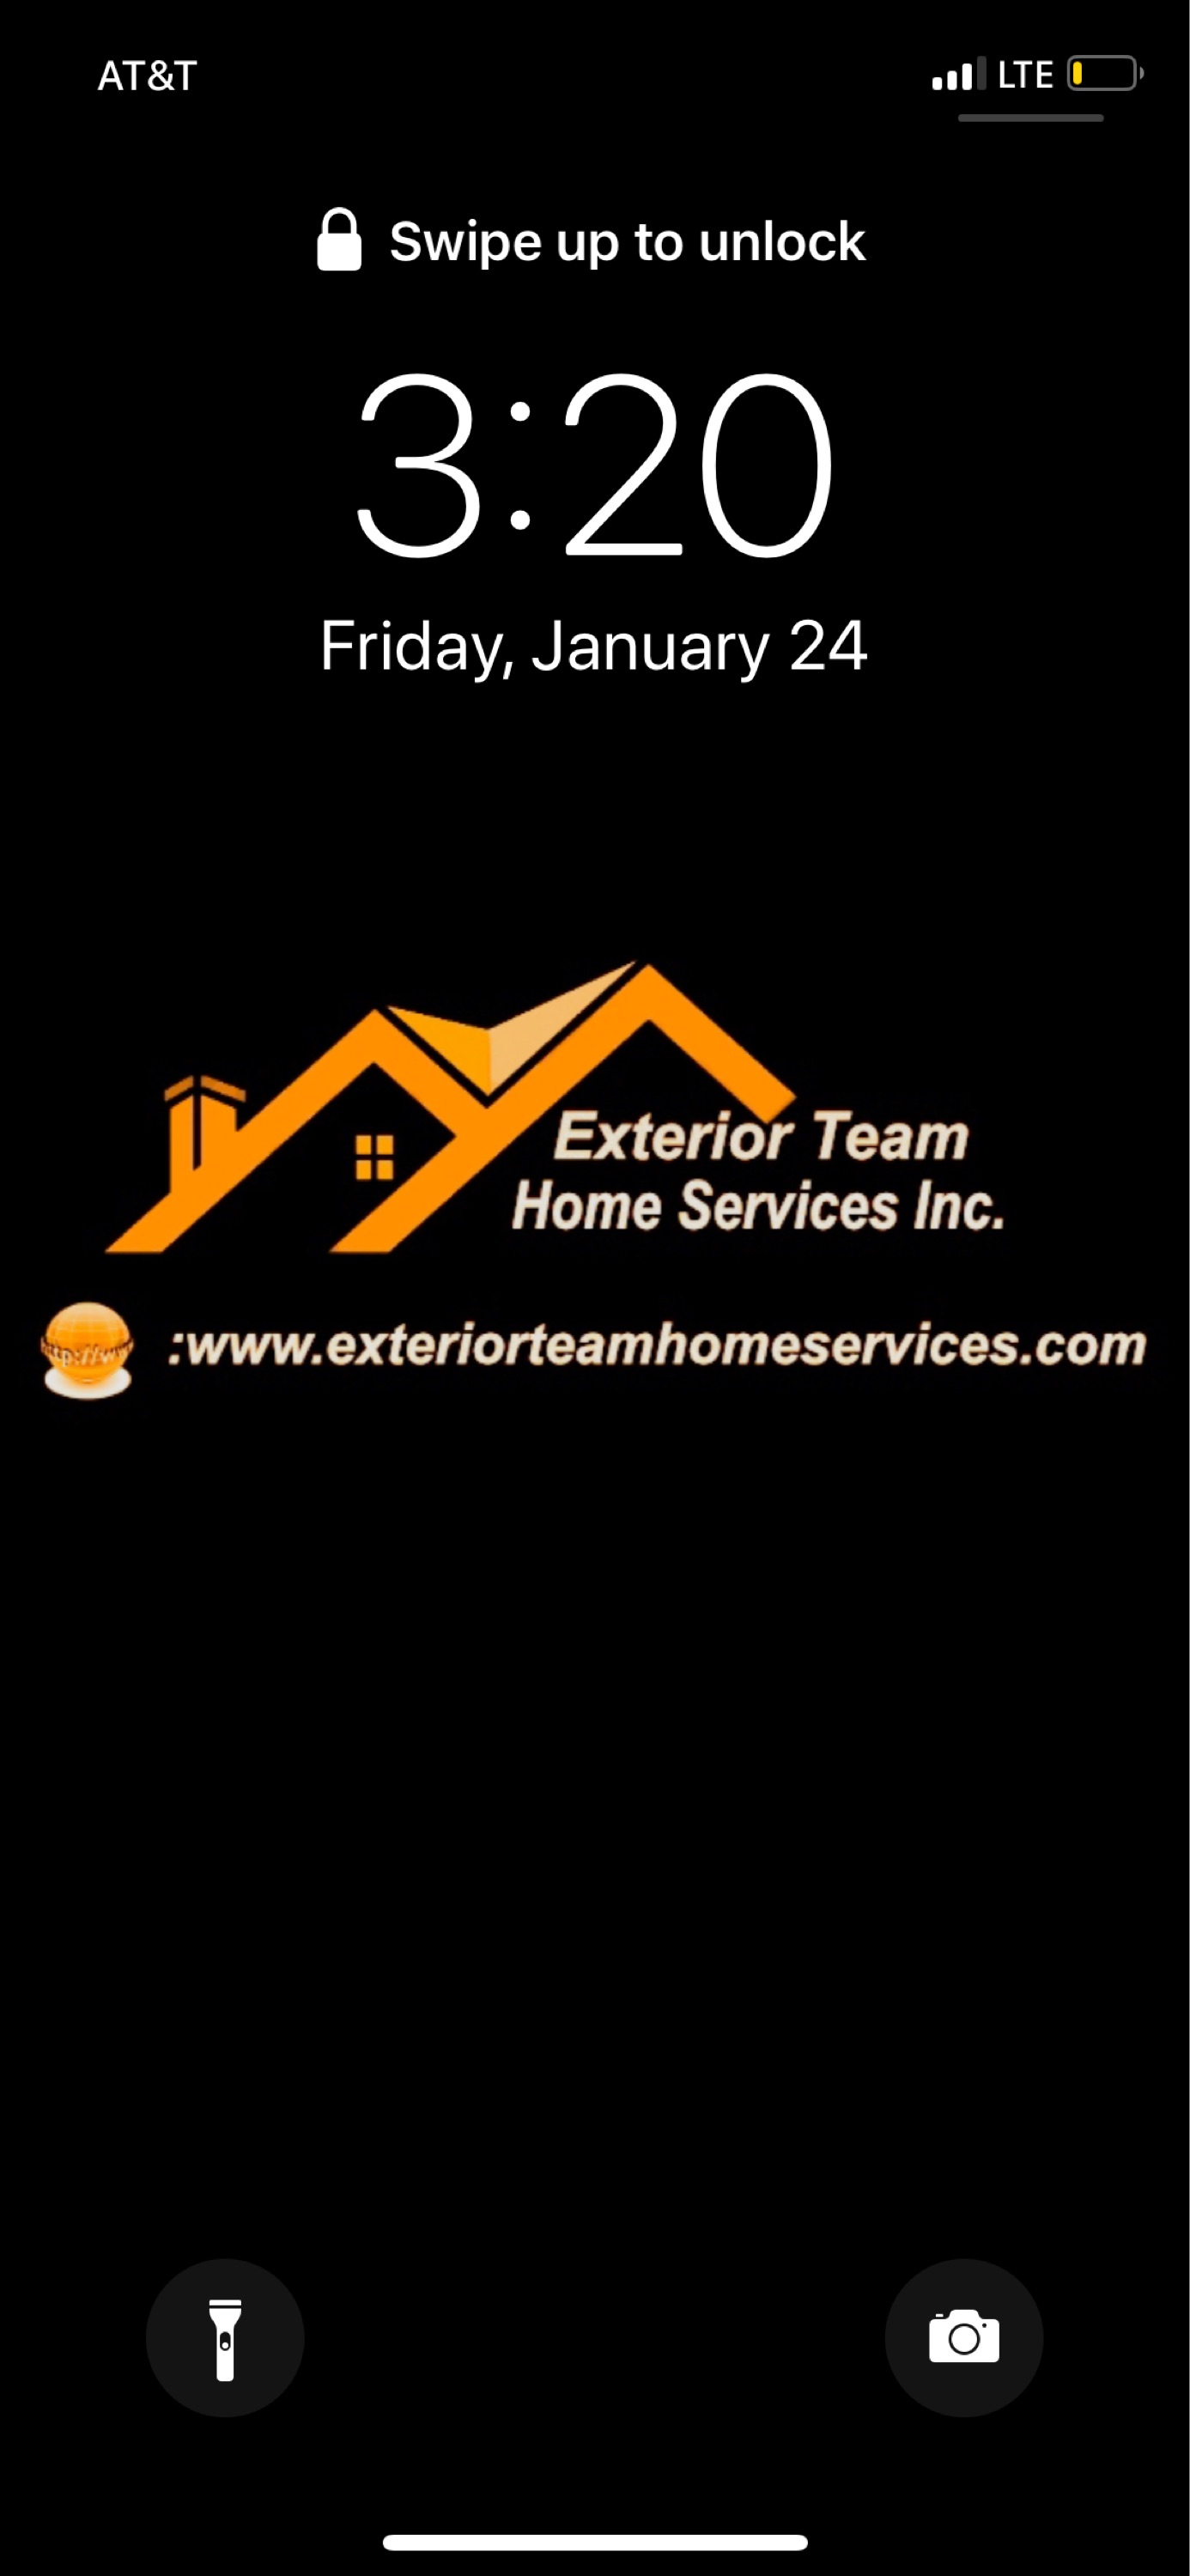 Exterior Team Home Services, Inc. Logo